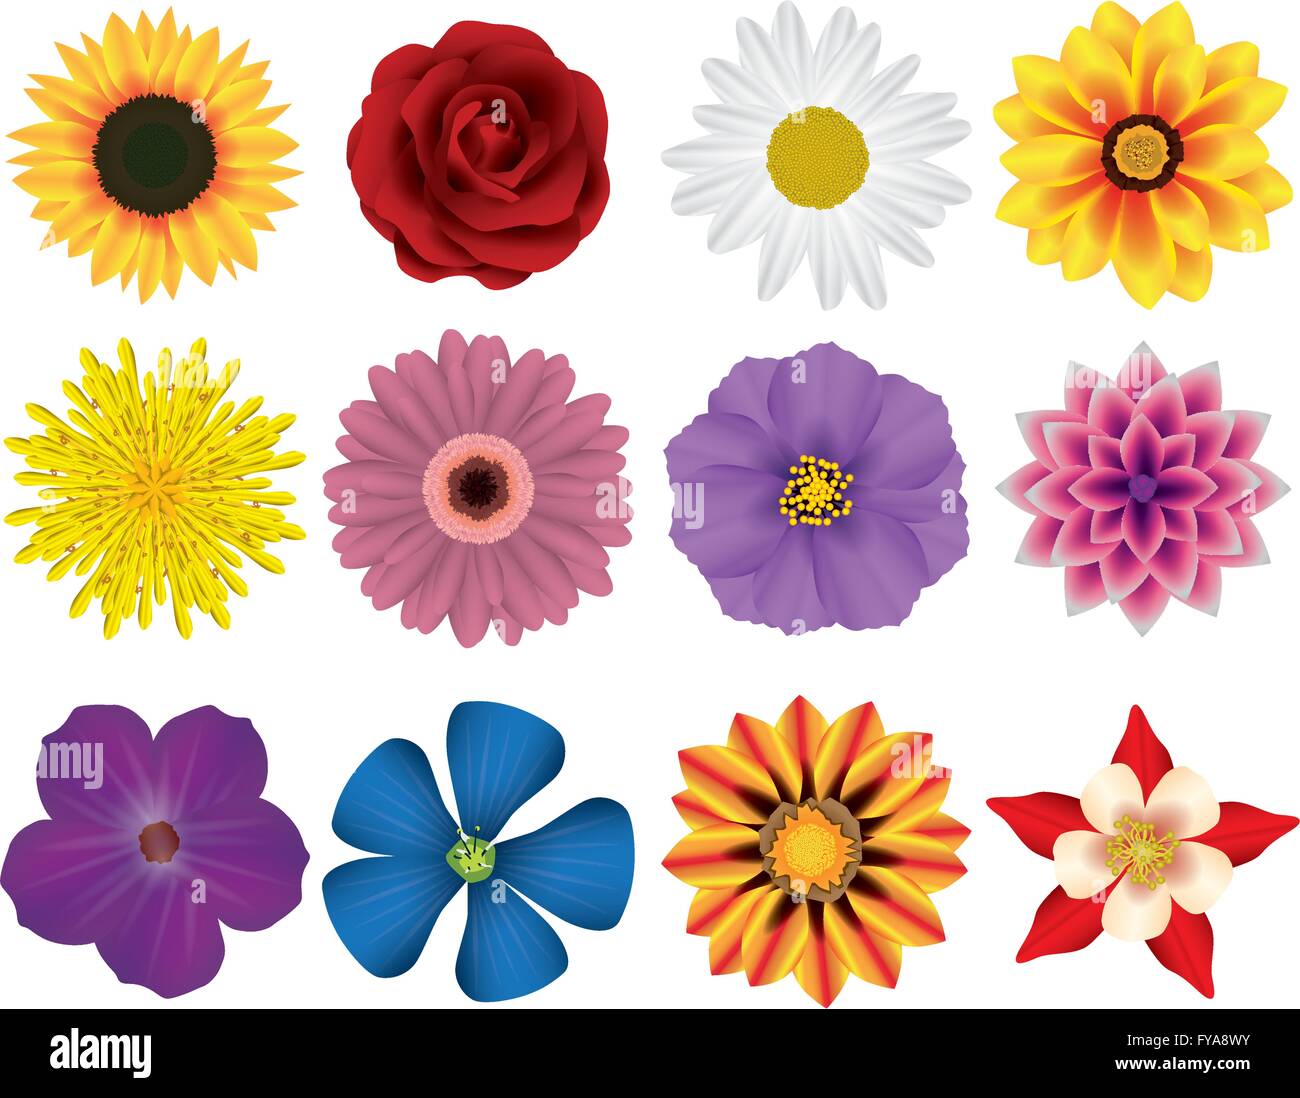 Abbildung Vektor Grafik legen Sie Blumen für den kreativen Einsatz in Grafik-design Stock Vektor